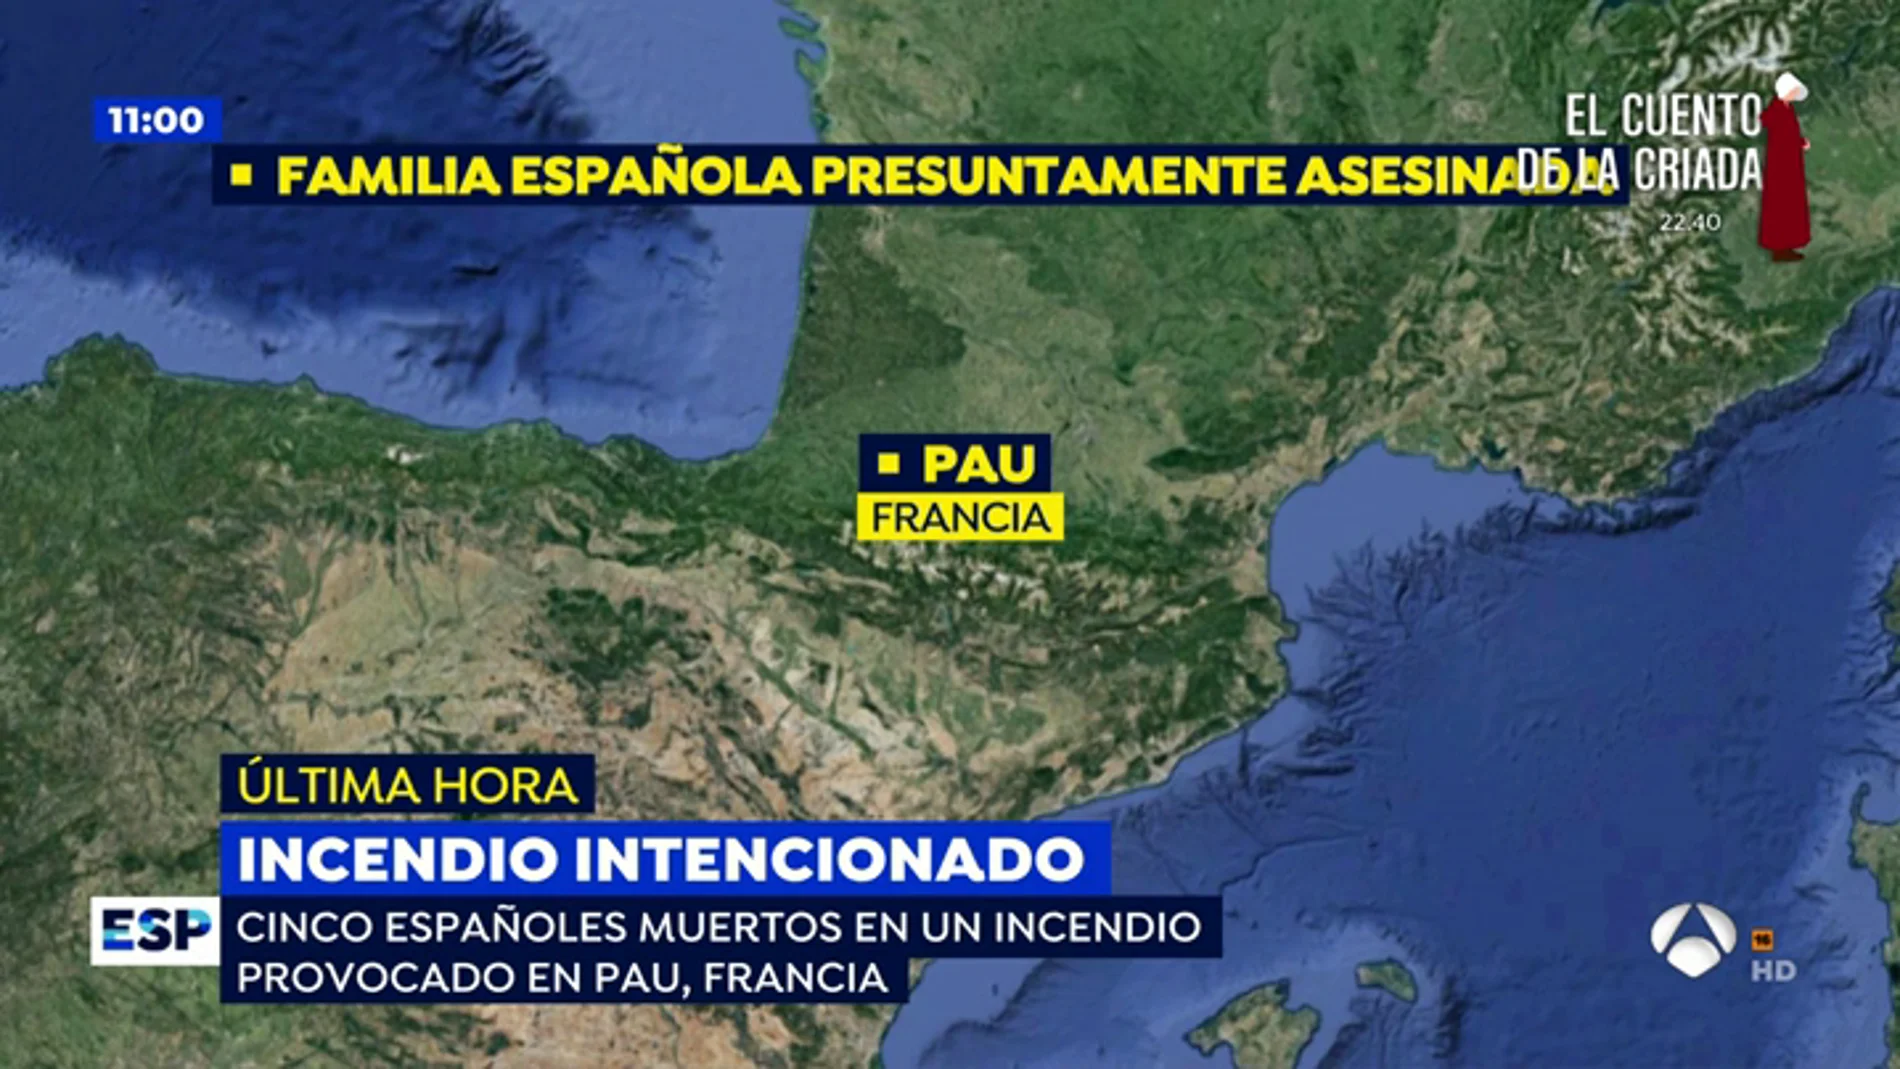 Encontrados 5 españoles muertos en un incendio provocado en Francia